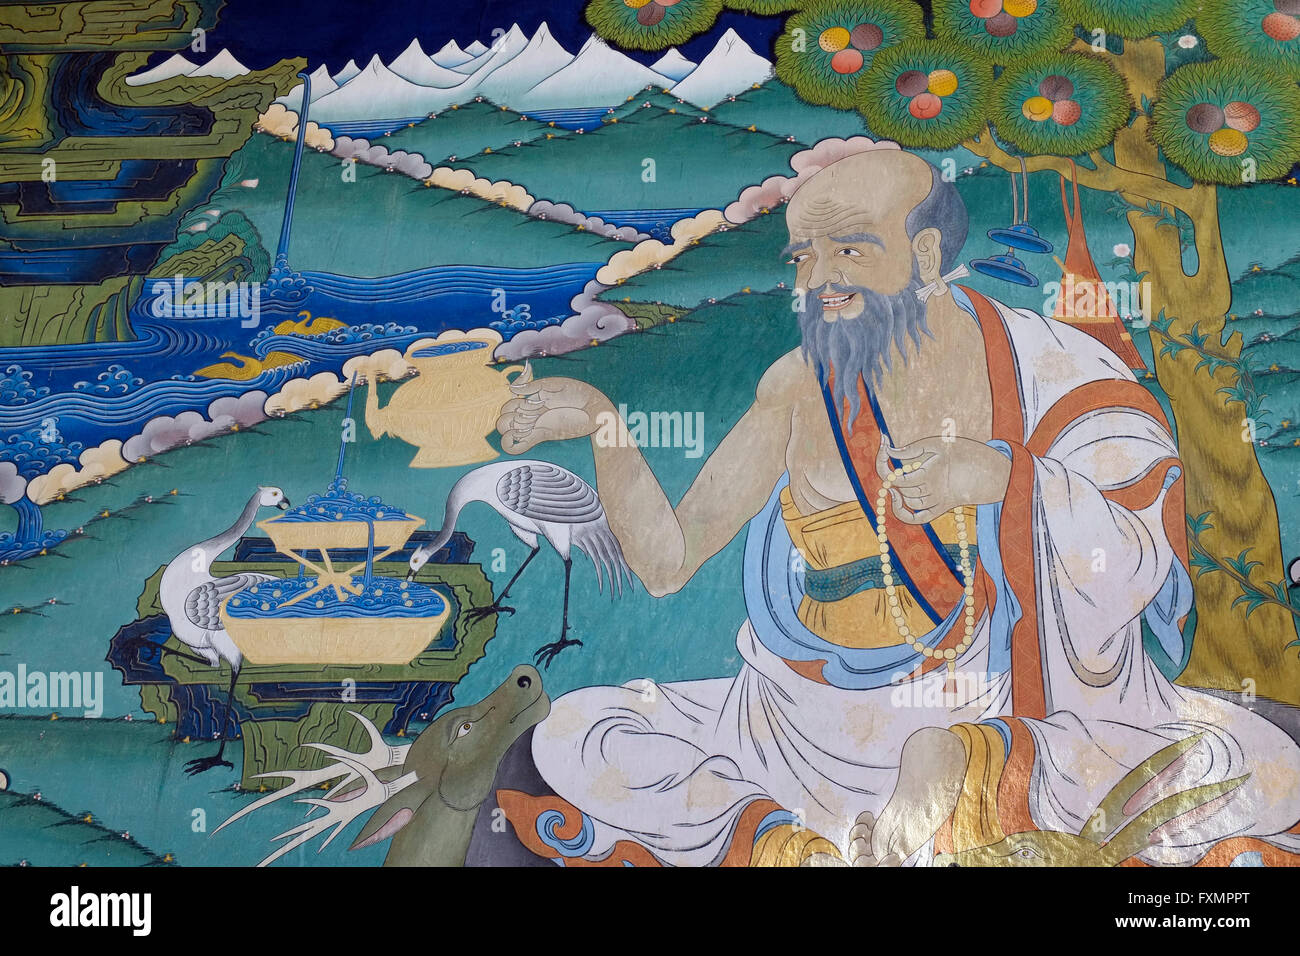 Une fresque à l'Punakha Dzong Pungtang (également connu sous le nom de Dechen Photrang Dzong), Punakha, Bhoutan. Banque D'Images